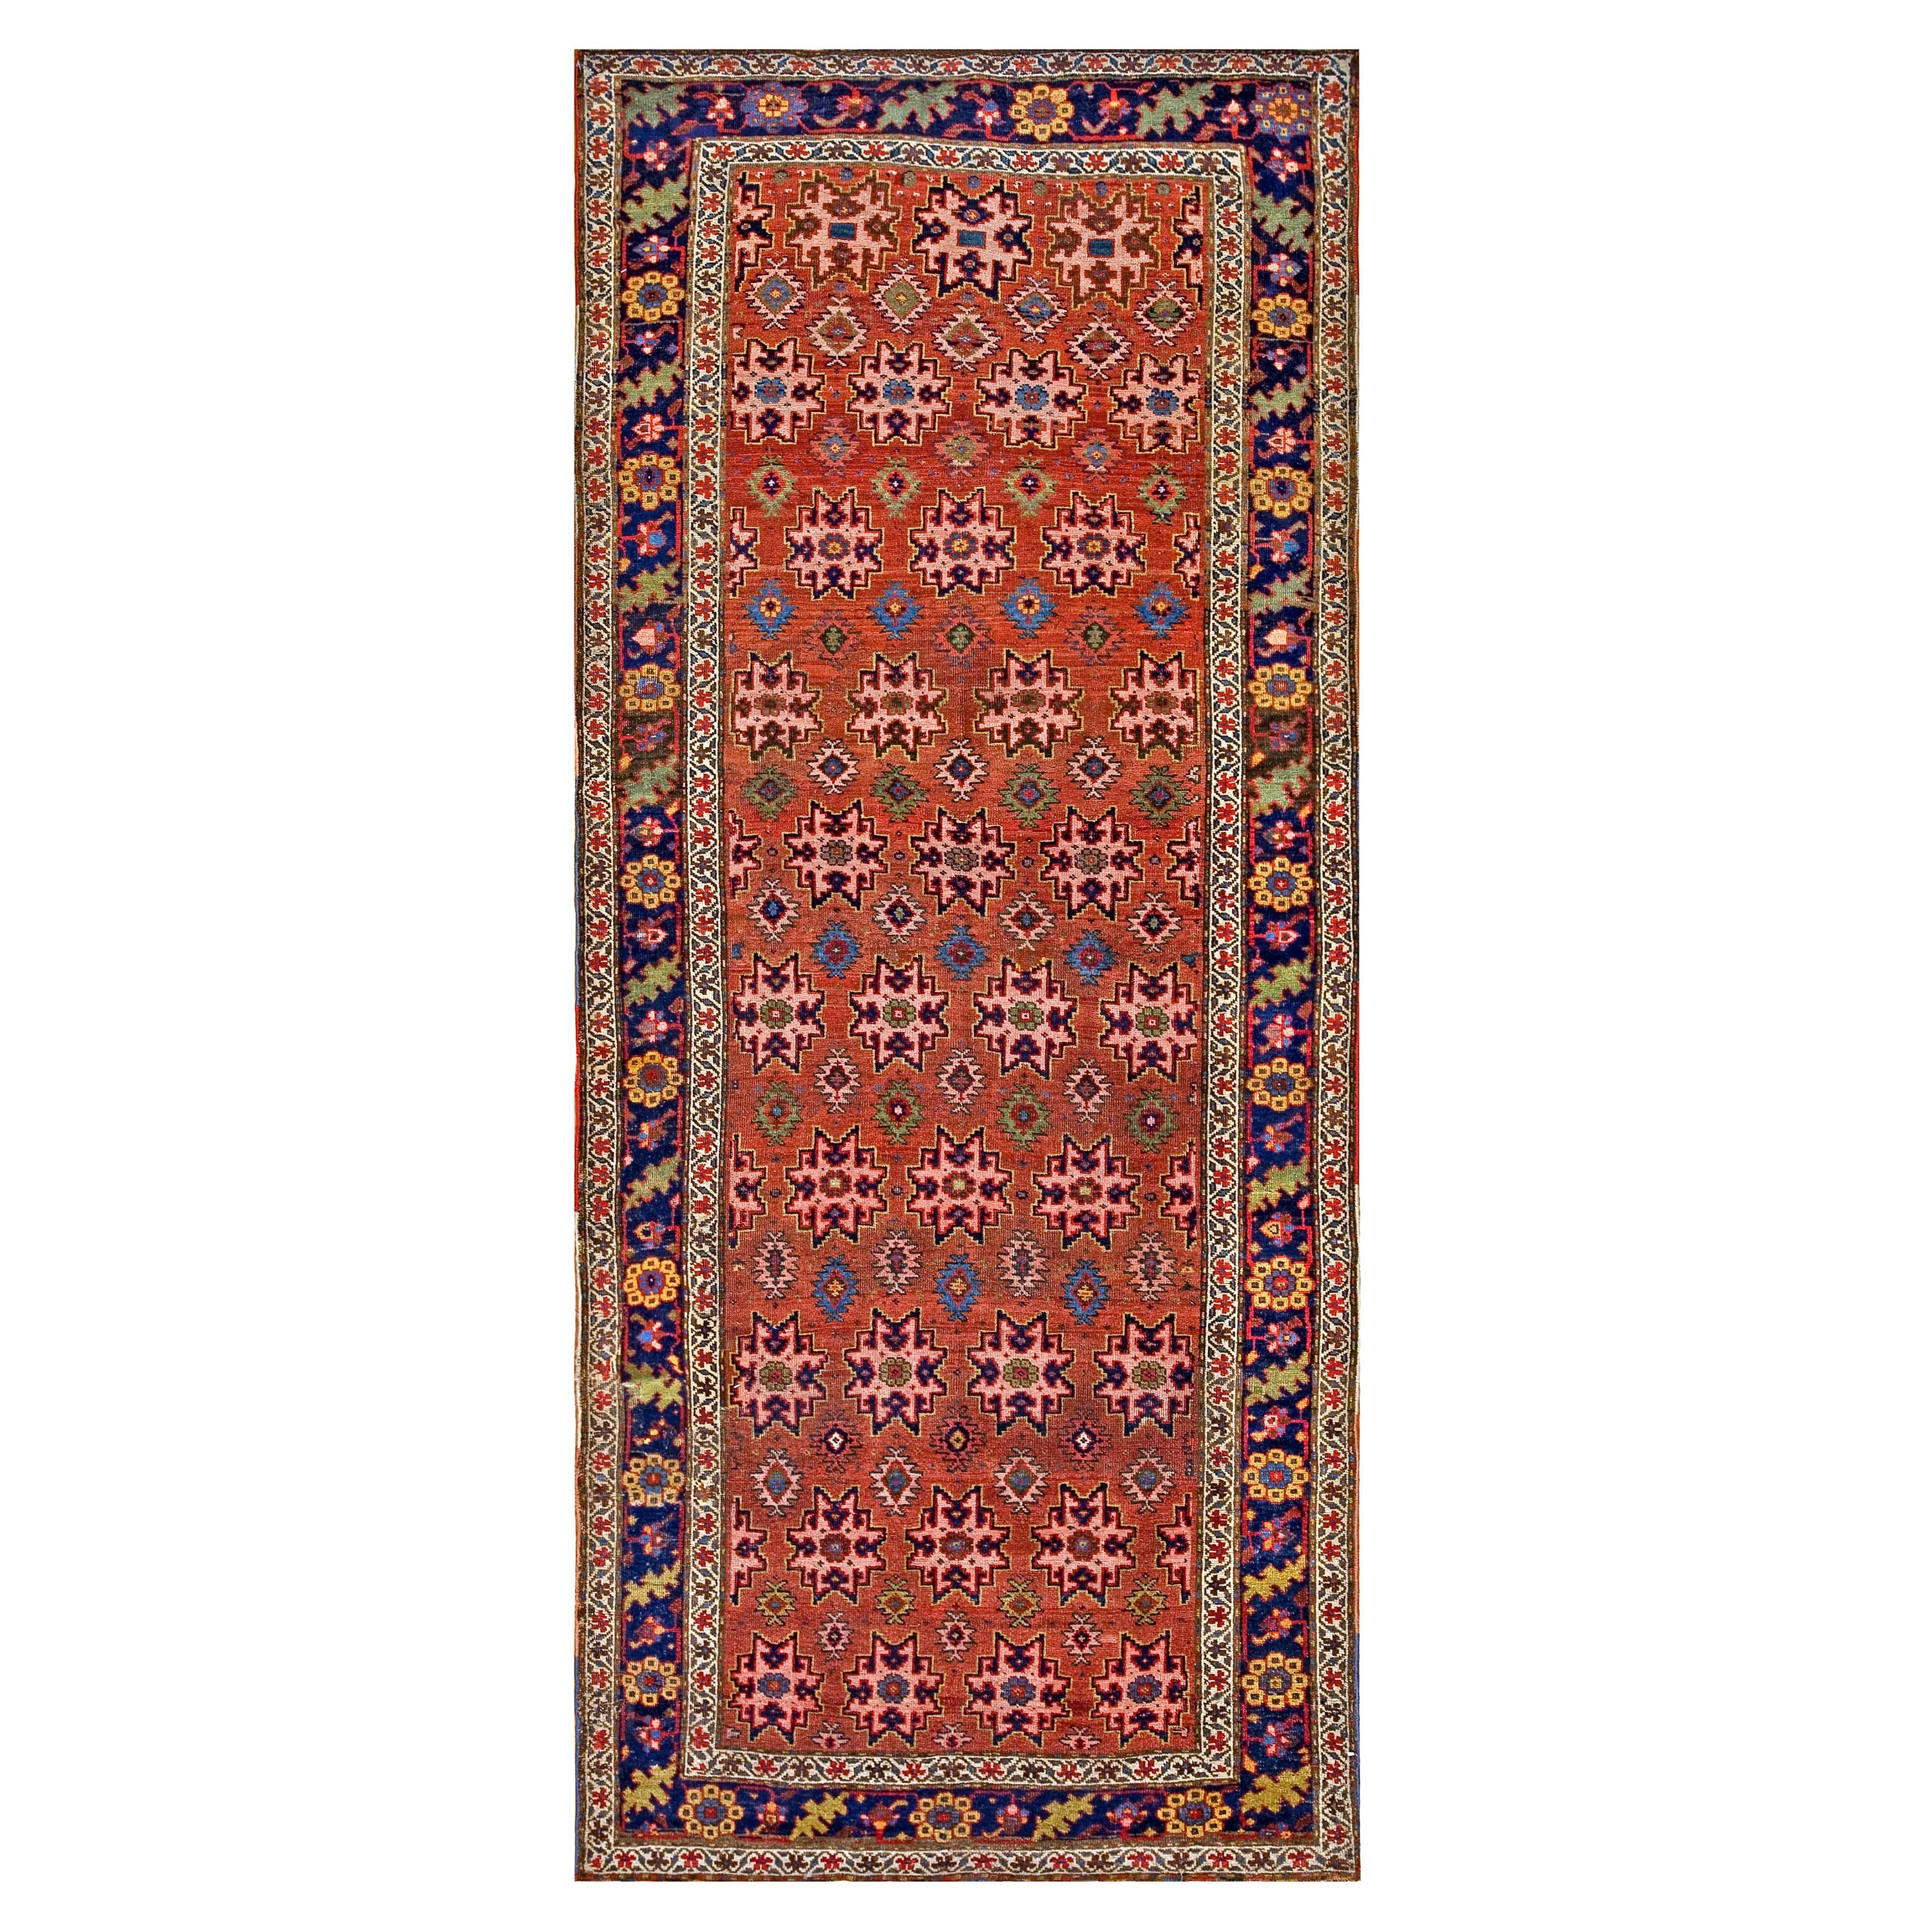 19th Century W. Persian Carpet Bijar Carpet ( 4'6" x 10'6" - 137 x 320 )